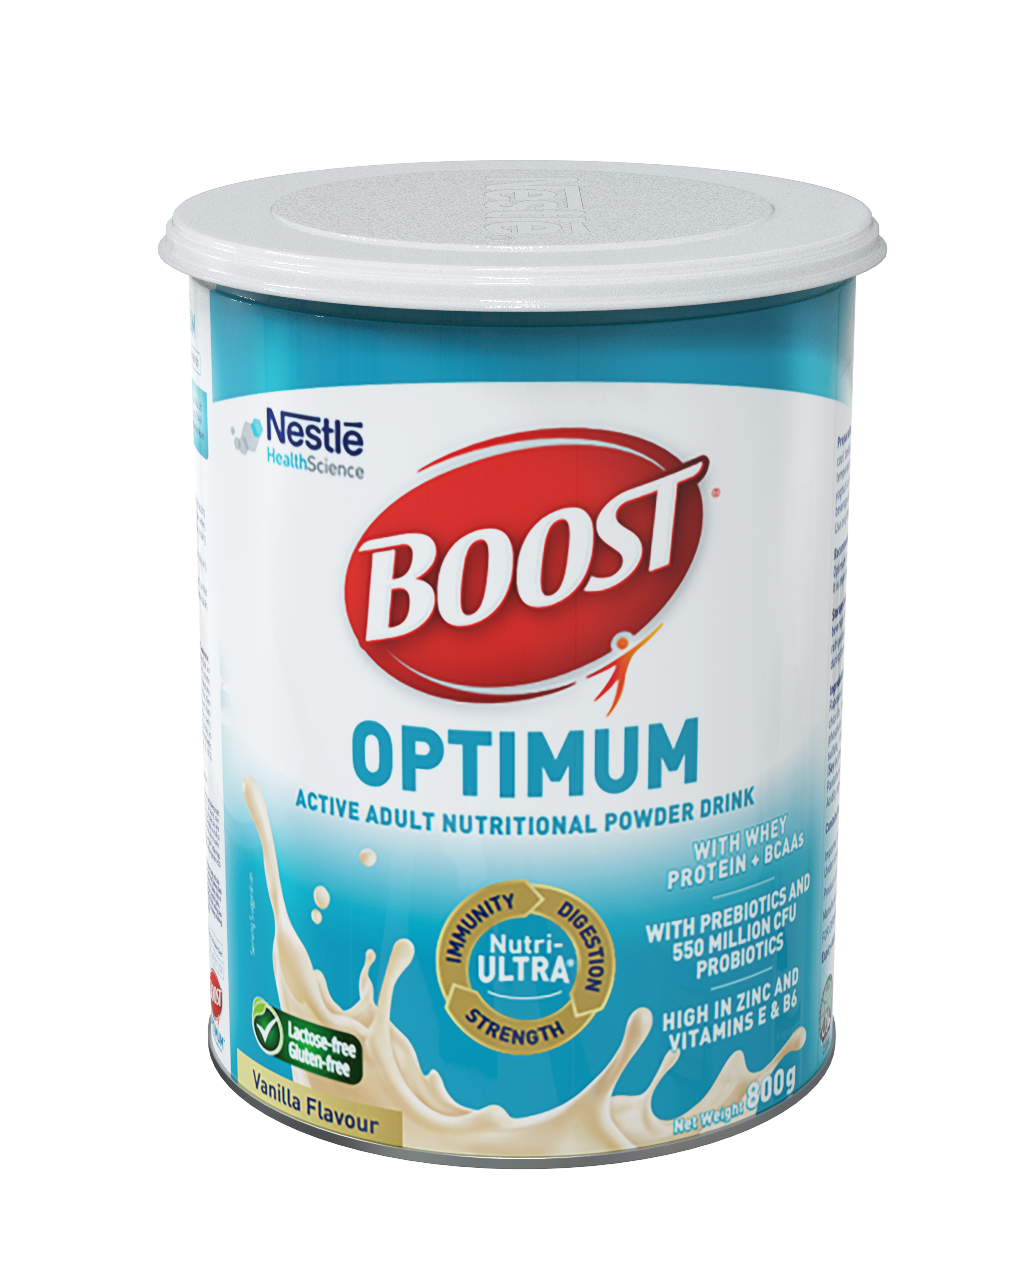 Sản phẩm BOOST Optimum - giải pháp dinh dưỡng chuyên biệt dành cho người lớn tuổi